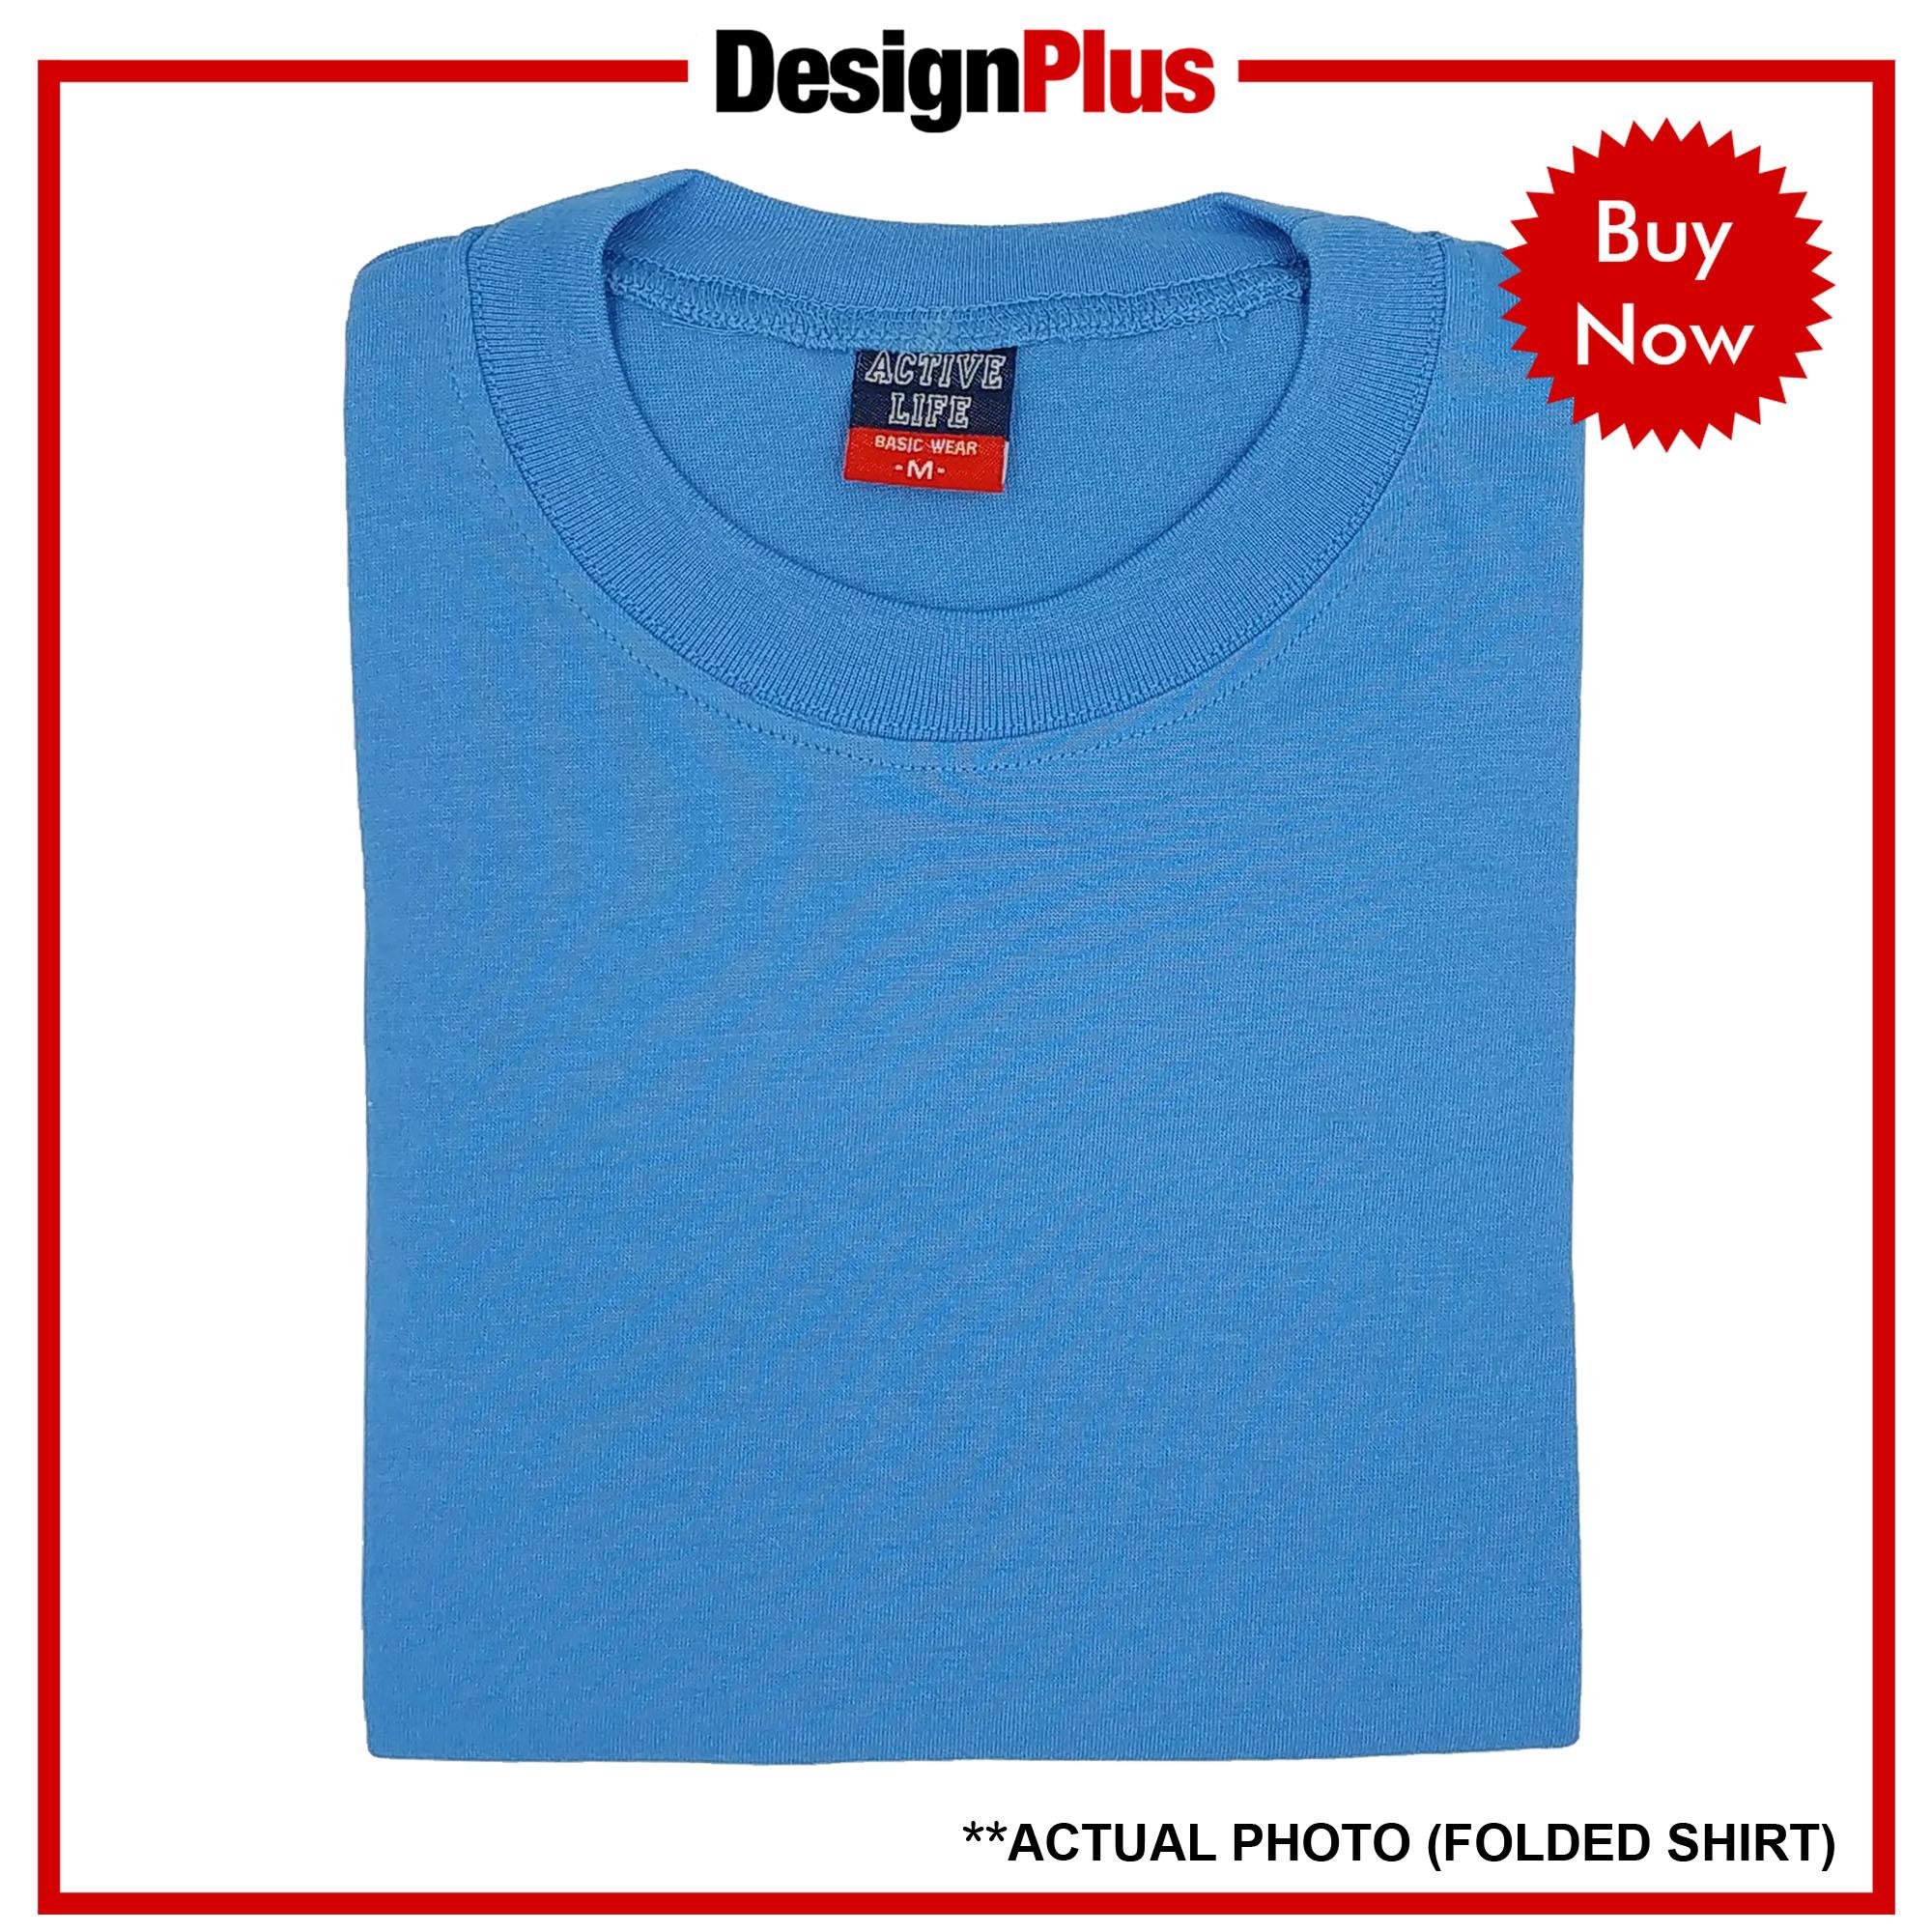 DesignPlus Active Life Plain Roundneck Basic Unisex T-Shirt Combed Cotton (Light Blue) - shirt tshirt plain tee tees Mens t shirt shirts for men tshirts t-shirts sale plain top bestseller Light